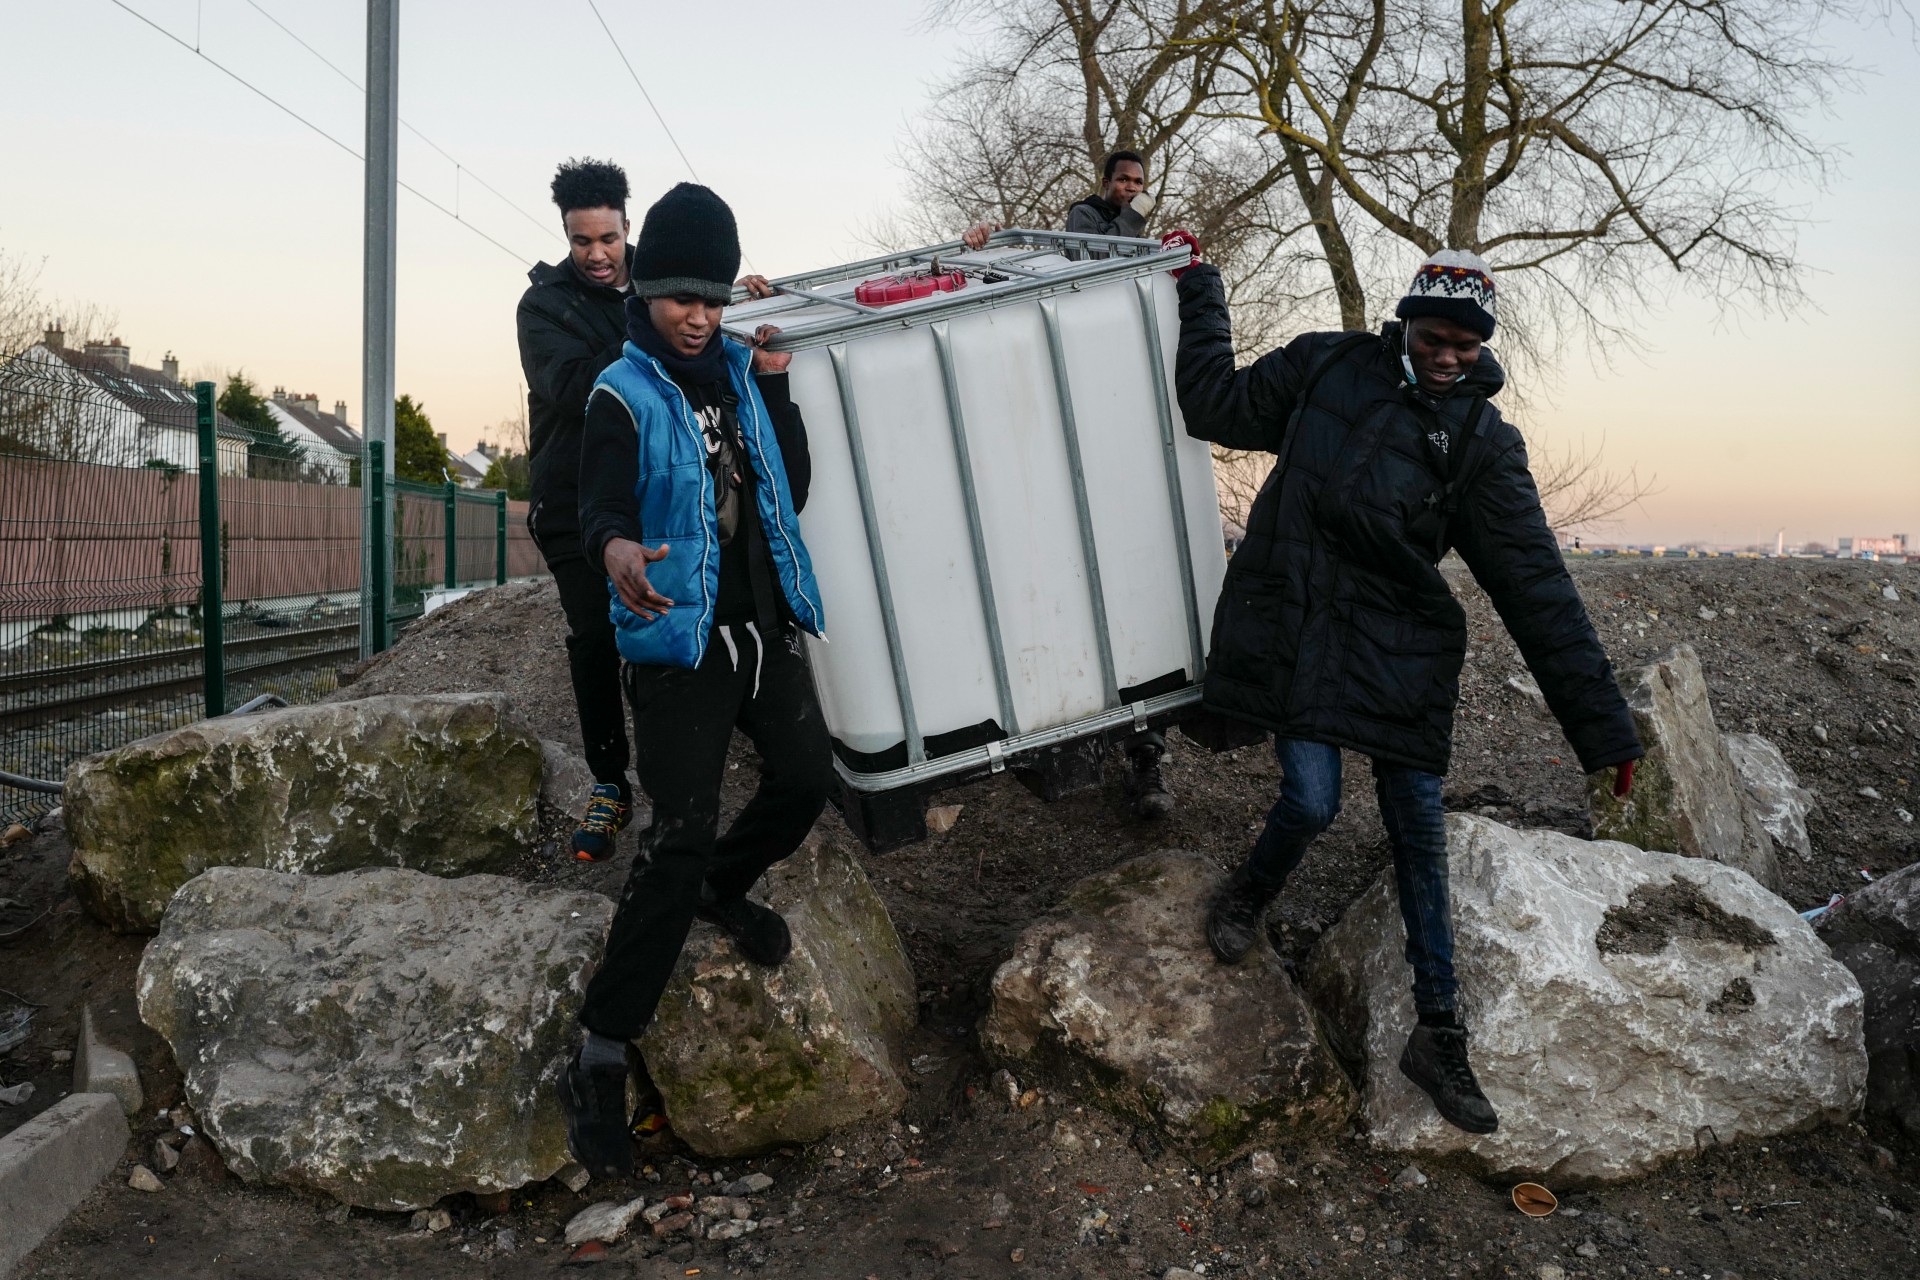 Les migrants n’apparaissent pas comme un sujet de contentieux à Calais malgré le discours anti-immigration de nombreux candidats à la présidentielle (MEE/Abdul Saboor)